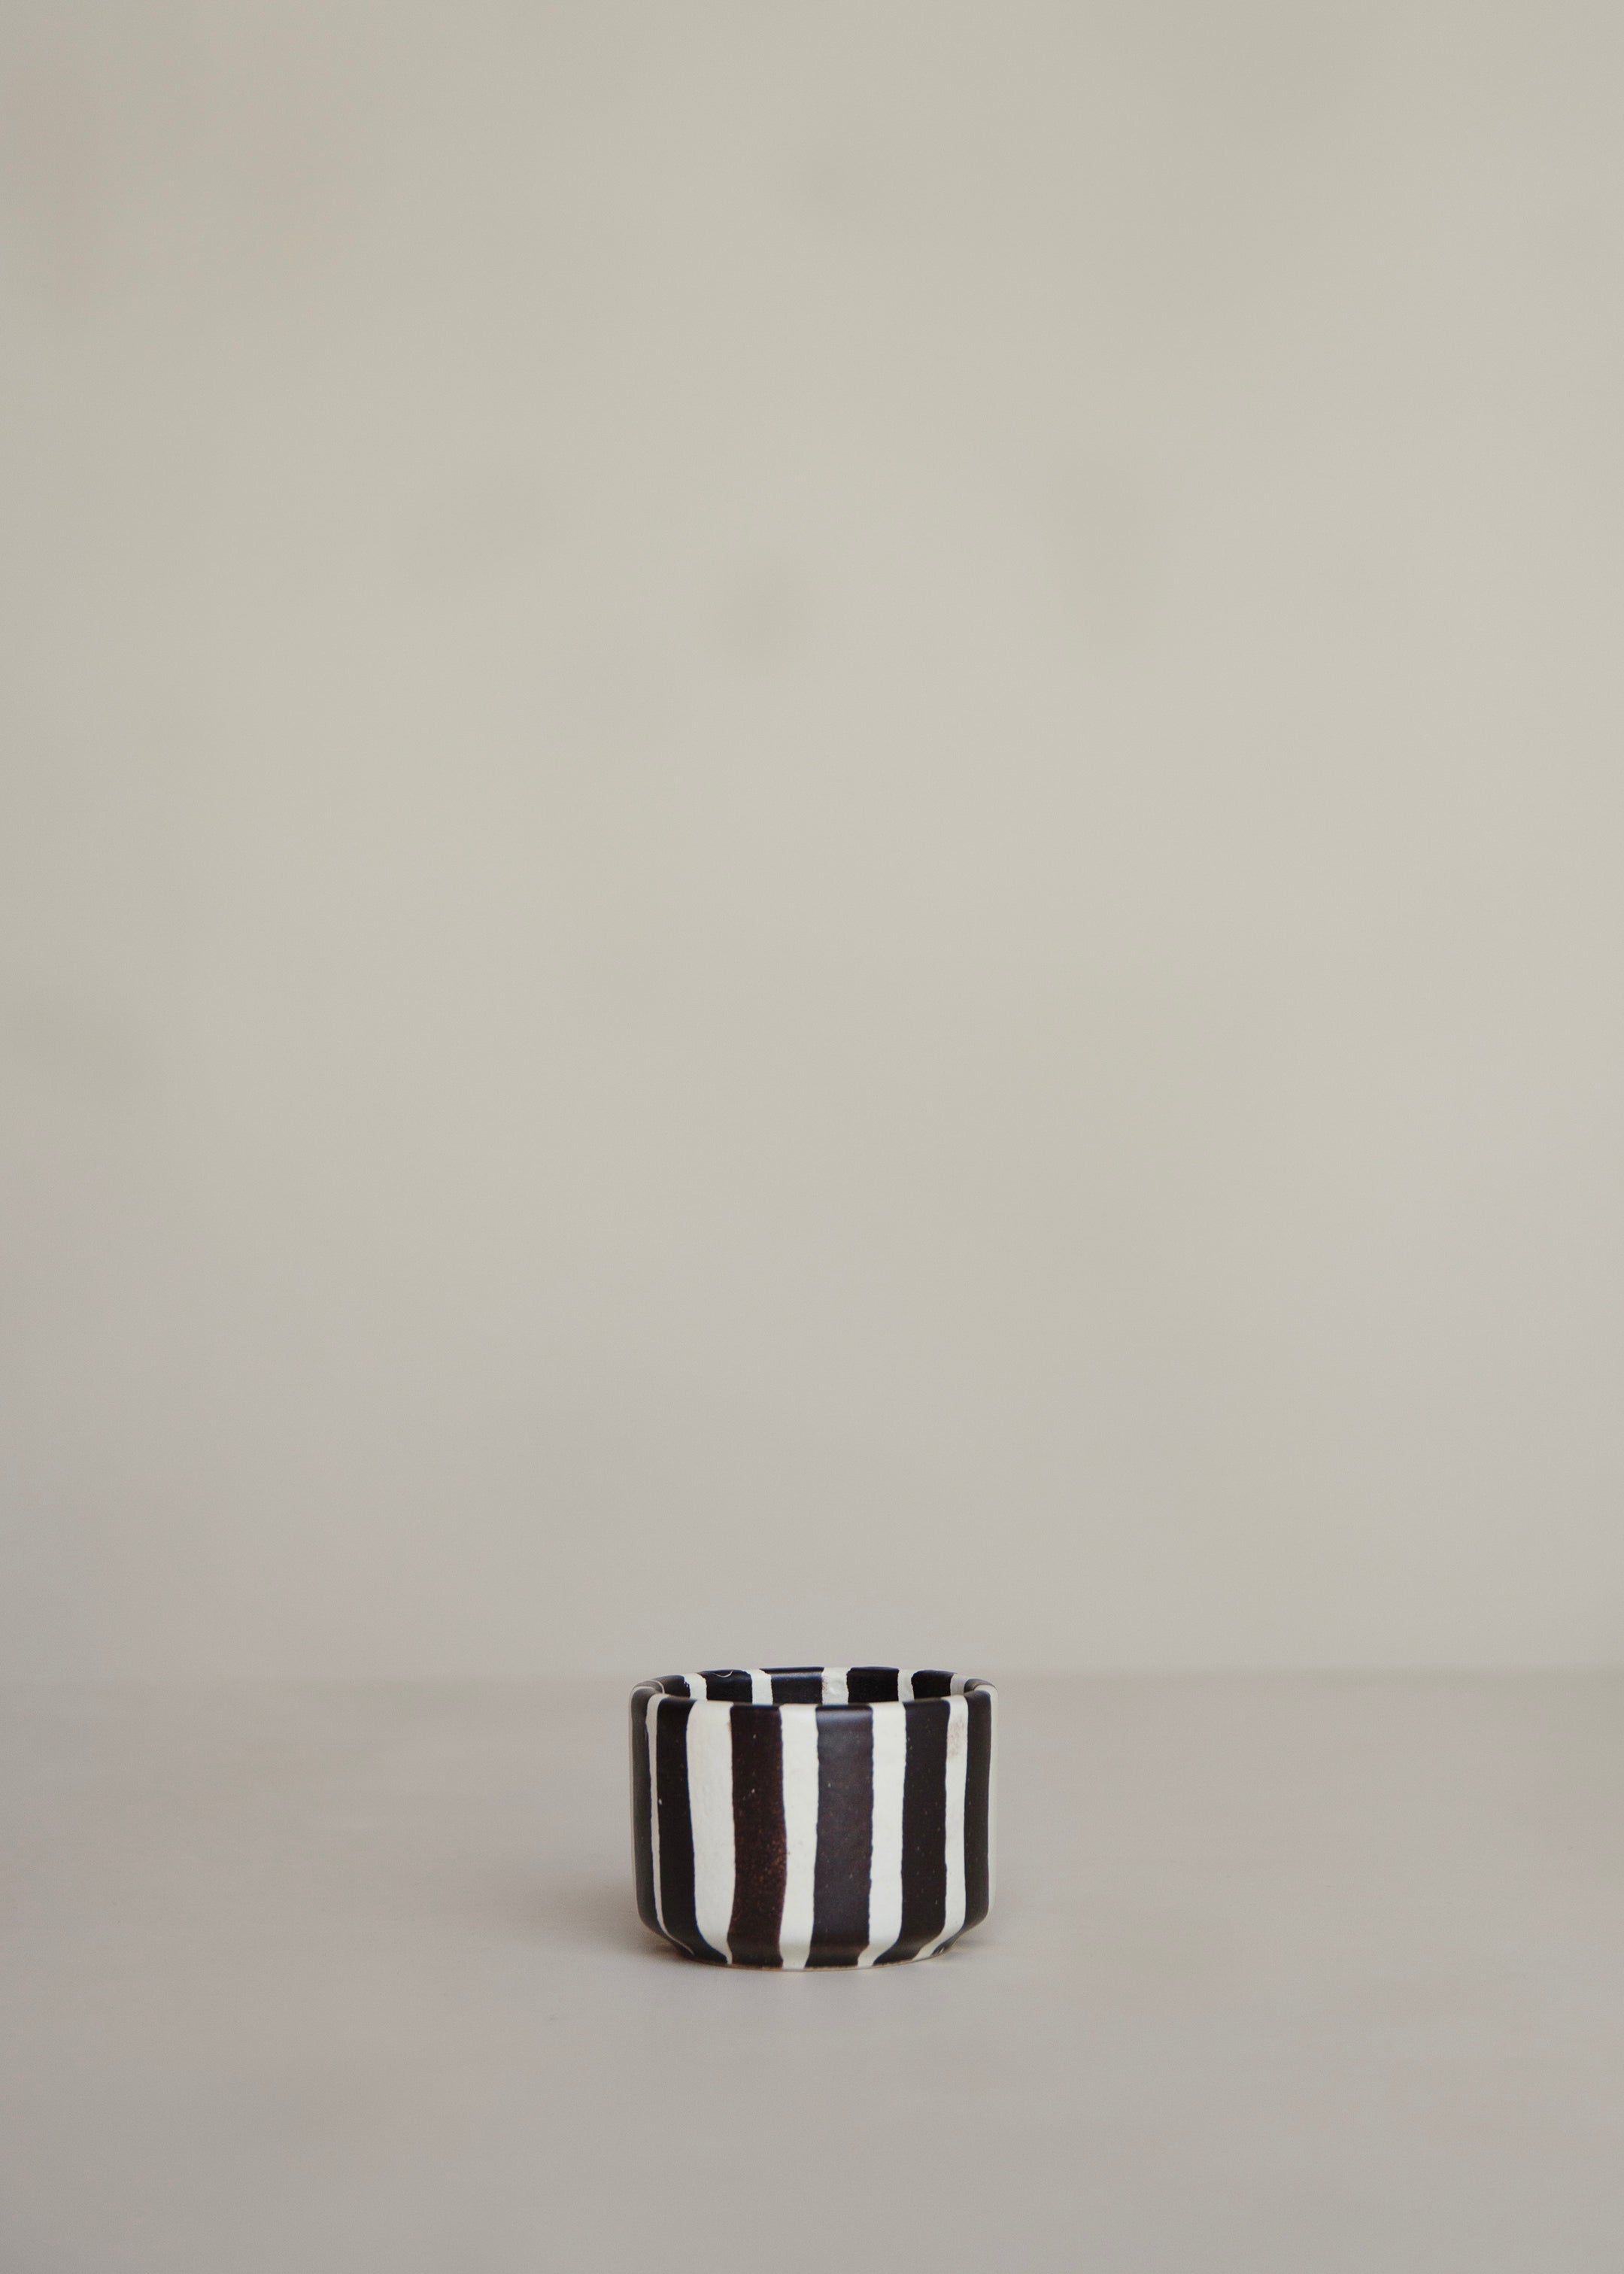 Tresna Espresso Cup / Striped